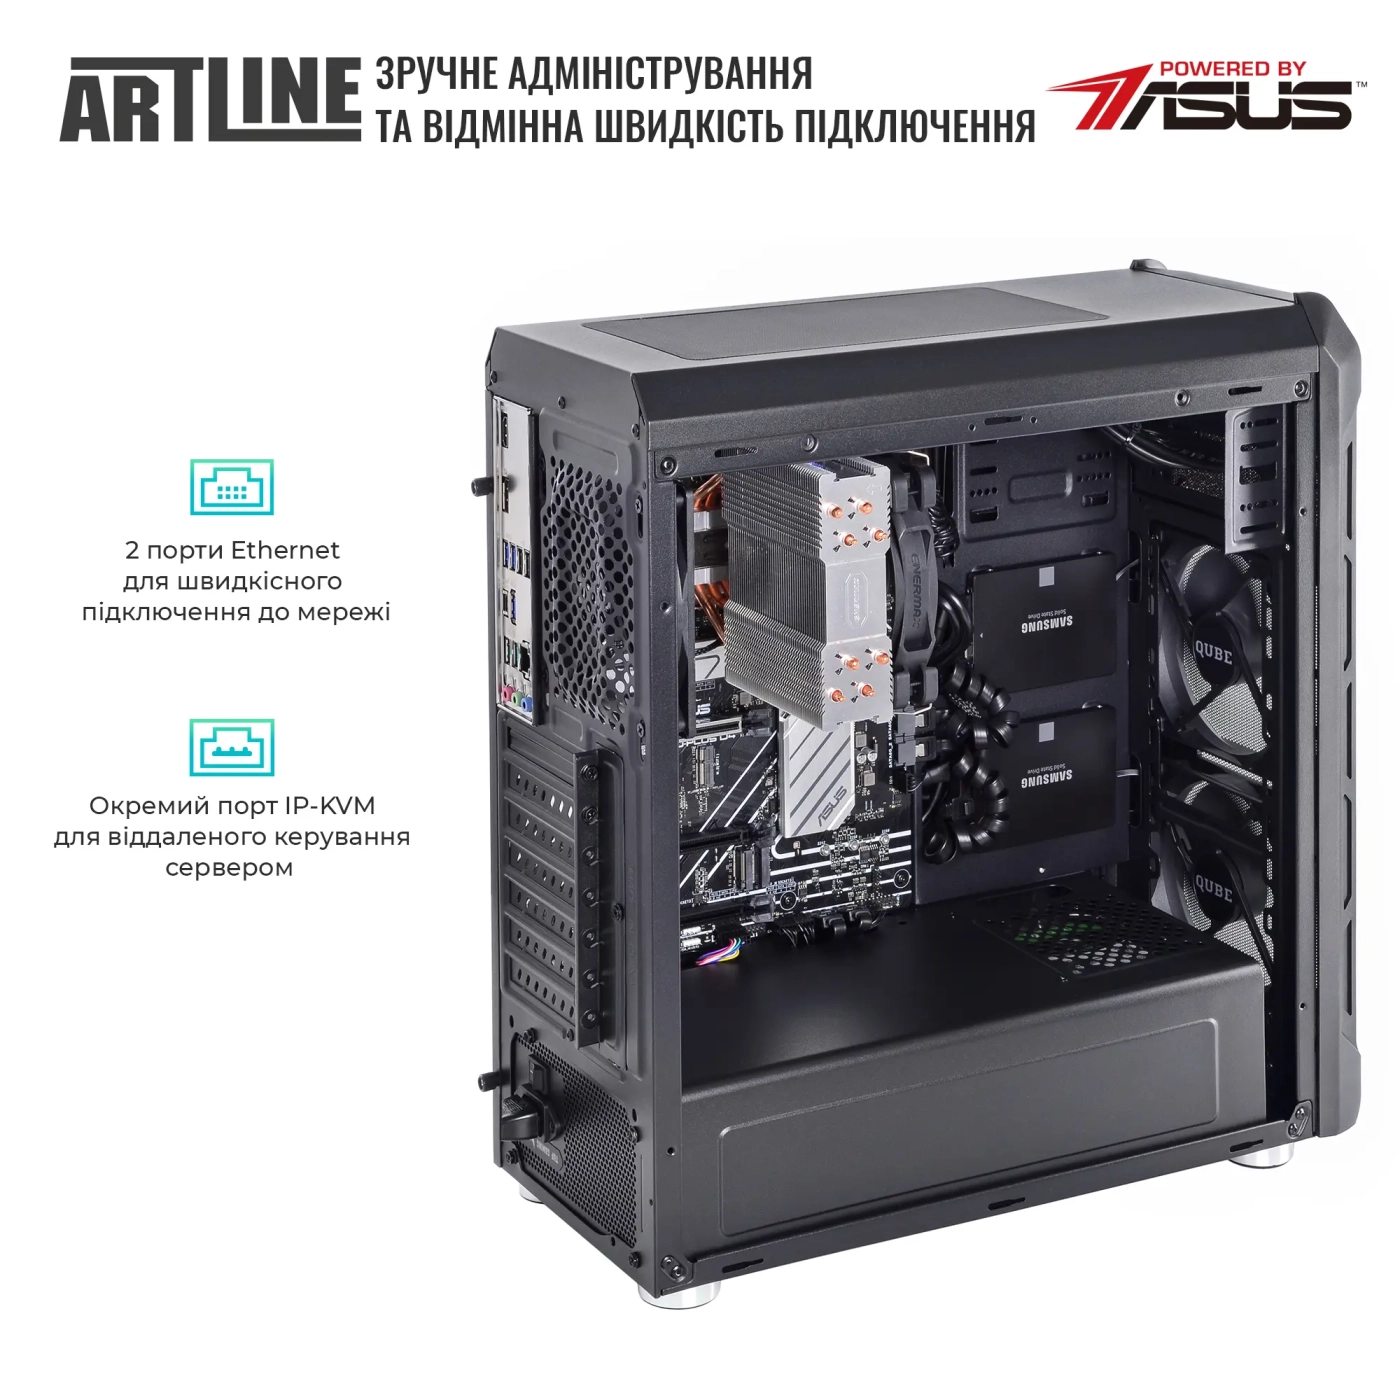 Купить Сервер ARTLINE Business T27 (T27v34) - фото 6